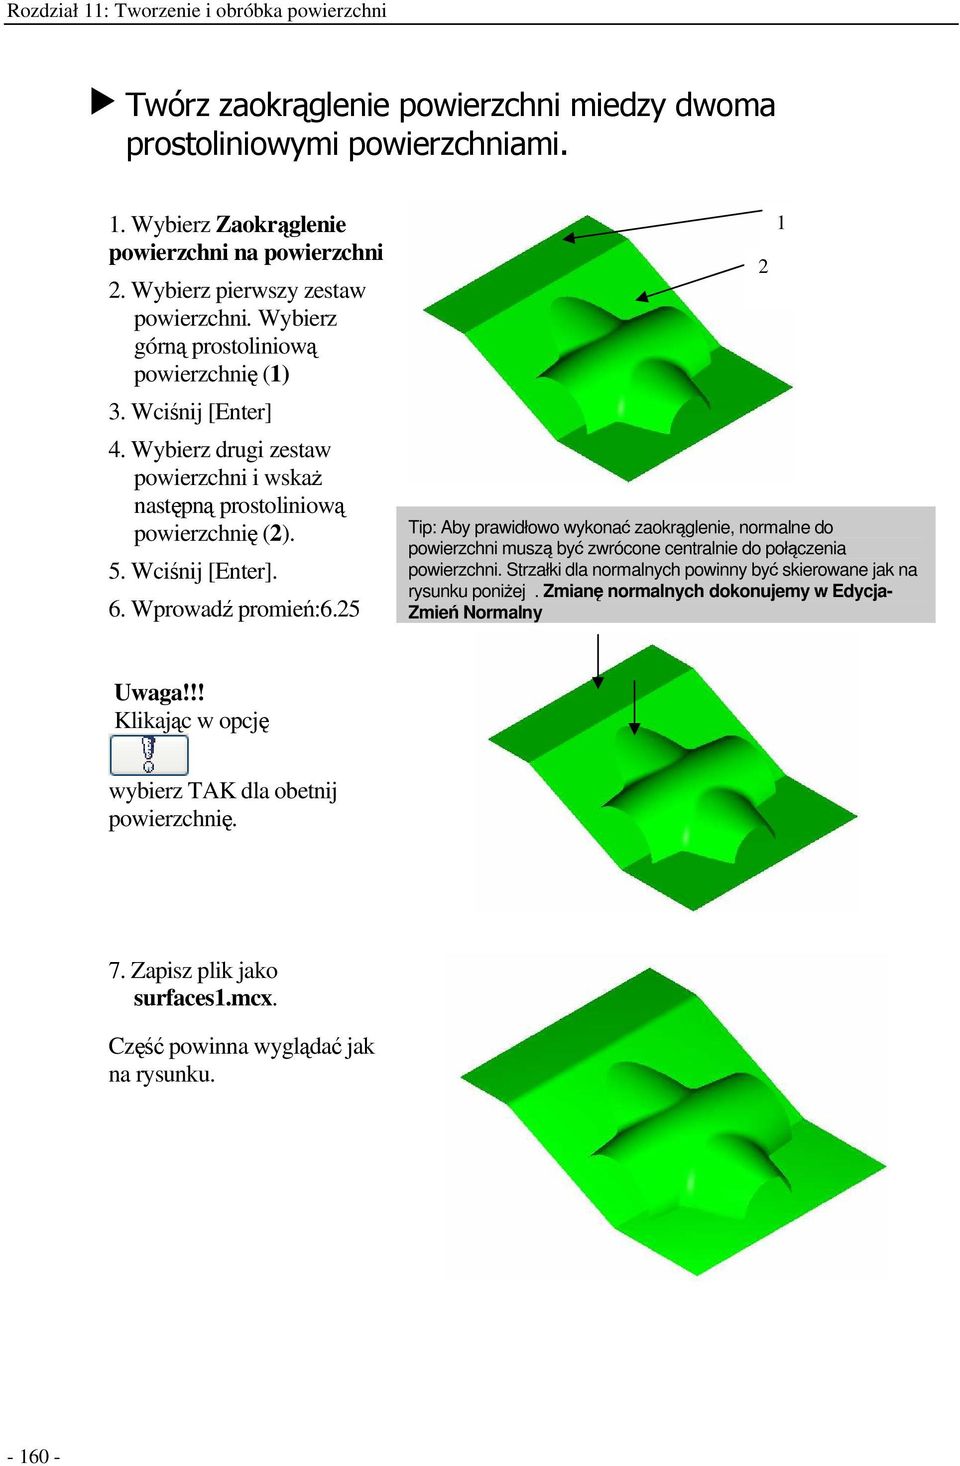 25 Tip: Aby prawidłowo wykona zaokrglenie, normalne do powierzchni musz by zwrócone centralnie do połczenia powierzchni.